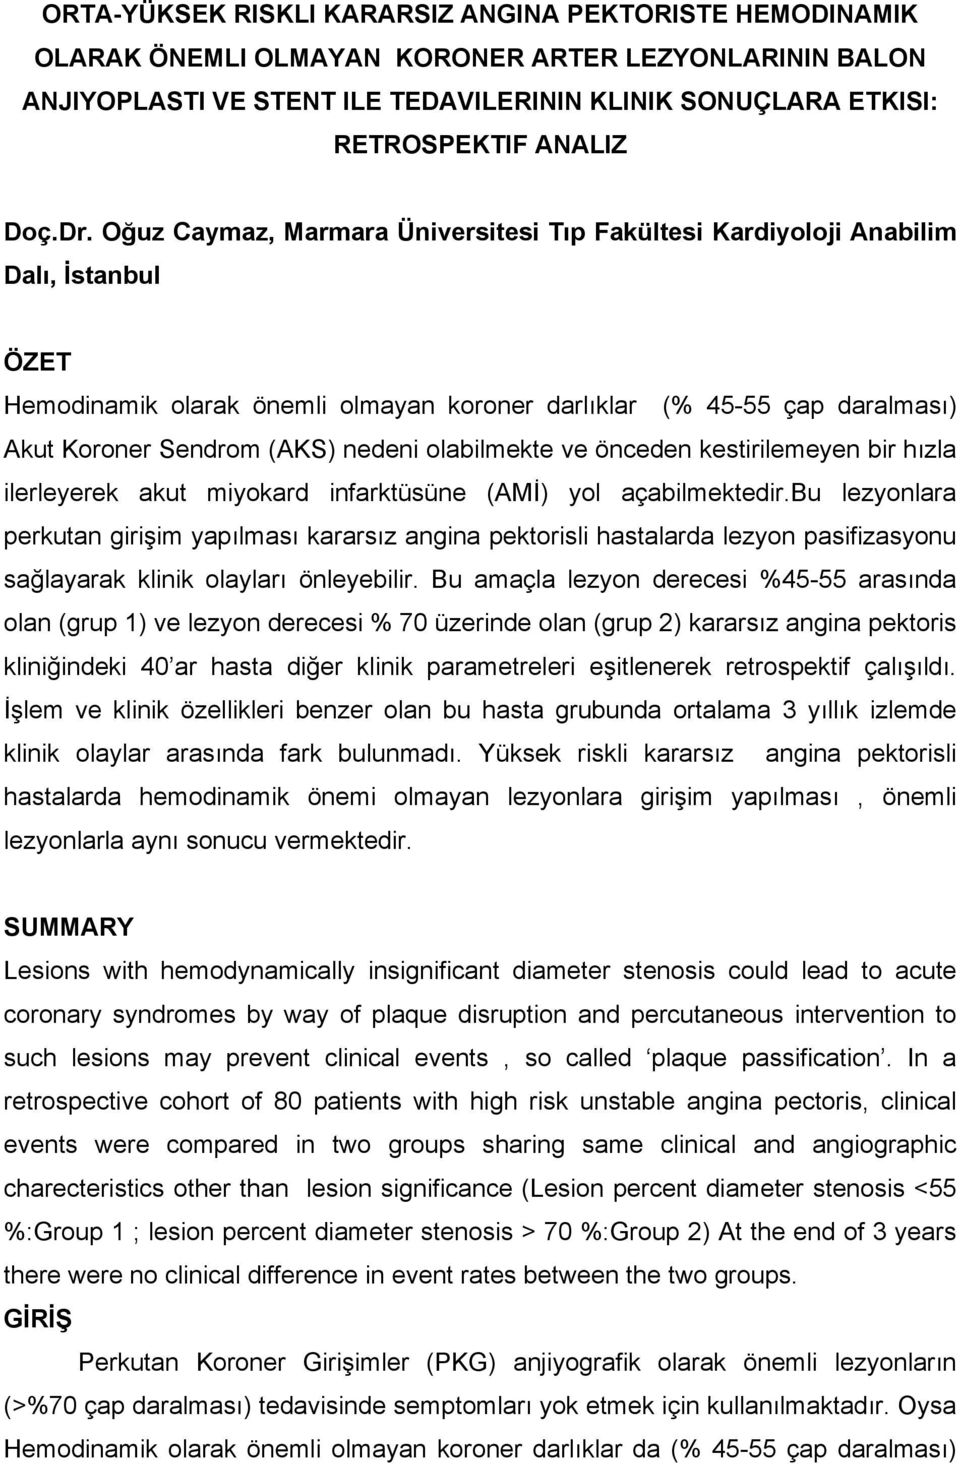 Oğuz Caymaz, Marmara Üniversitesi Tıp Fakültesi Kardiyoloji Anabilim Dalı, İstanbul ÖZET Hemodinamik olarak önemli olmayan koroner darlıklar (% 45-55 çap daralması) Akut Koroner Sendrom (AKS) nedeni